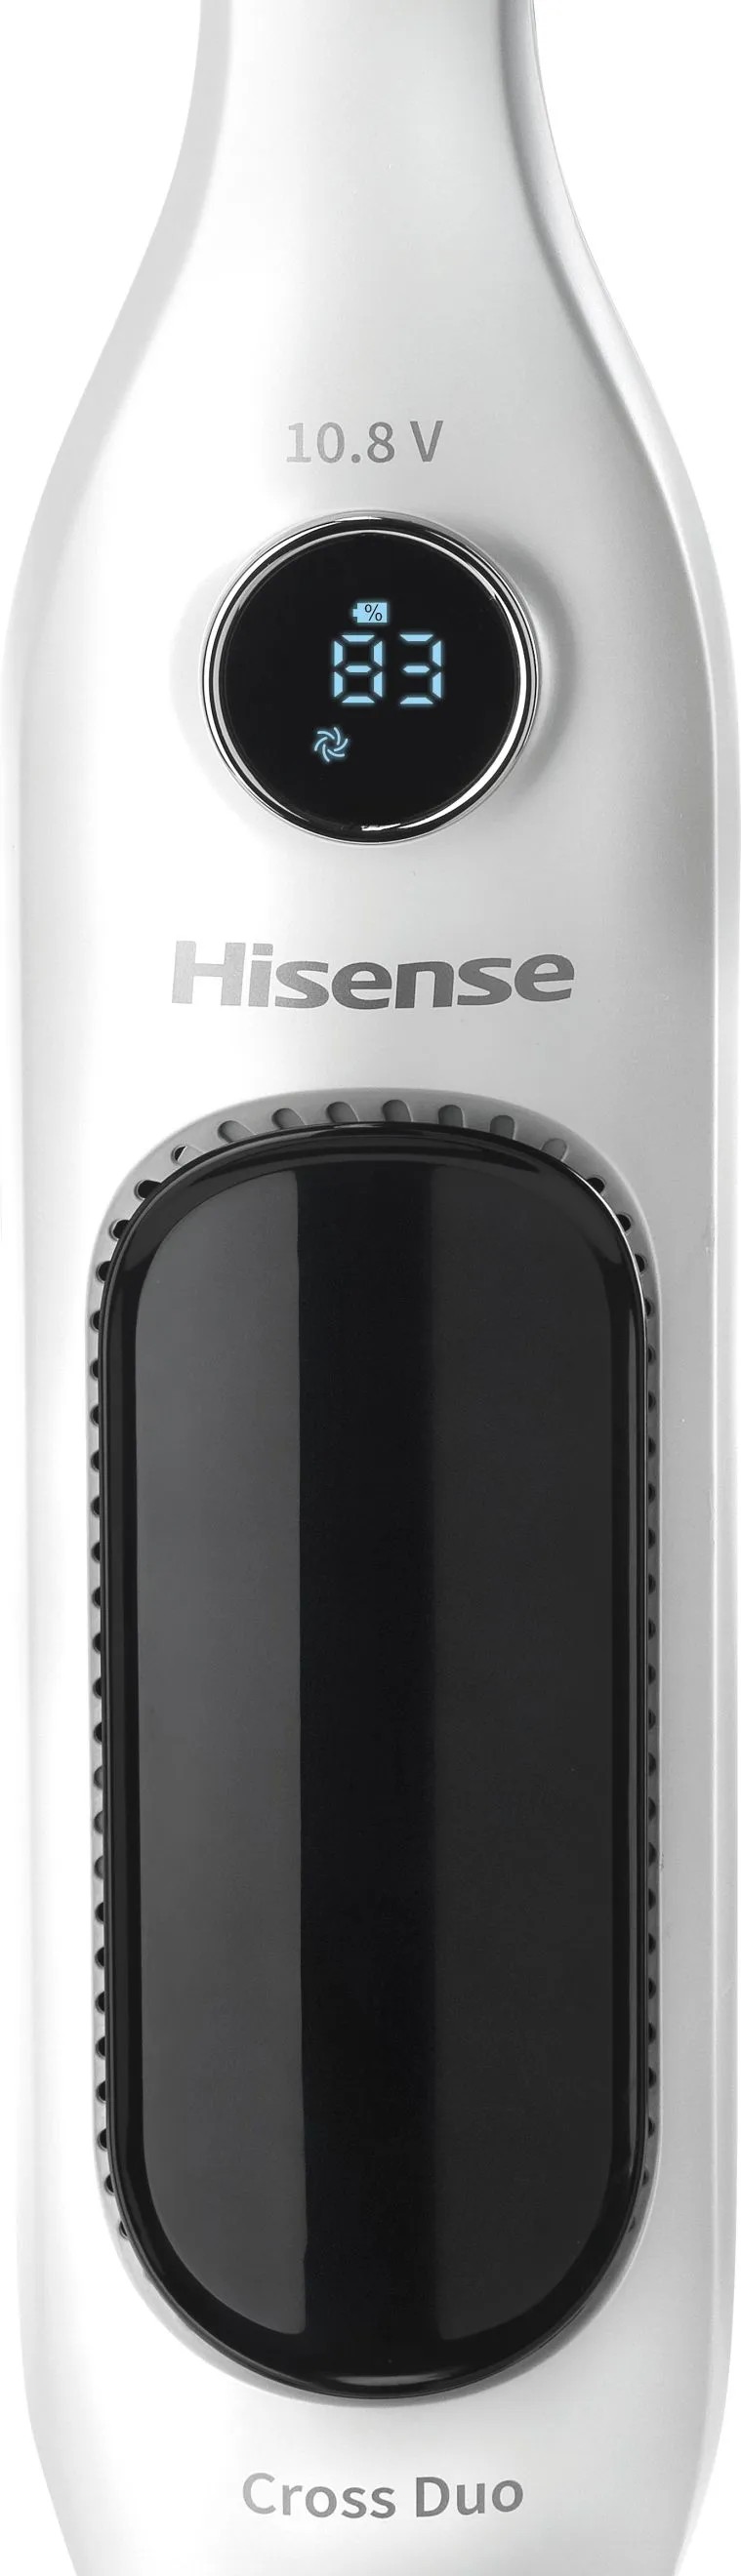 продаємо Hisense HVC5101W (VP6901-GS) в Україні - фото 4